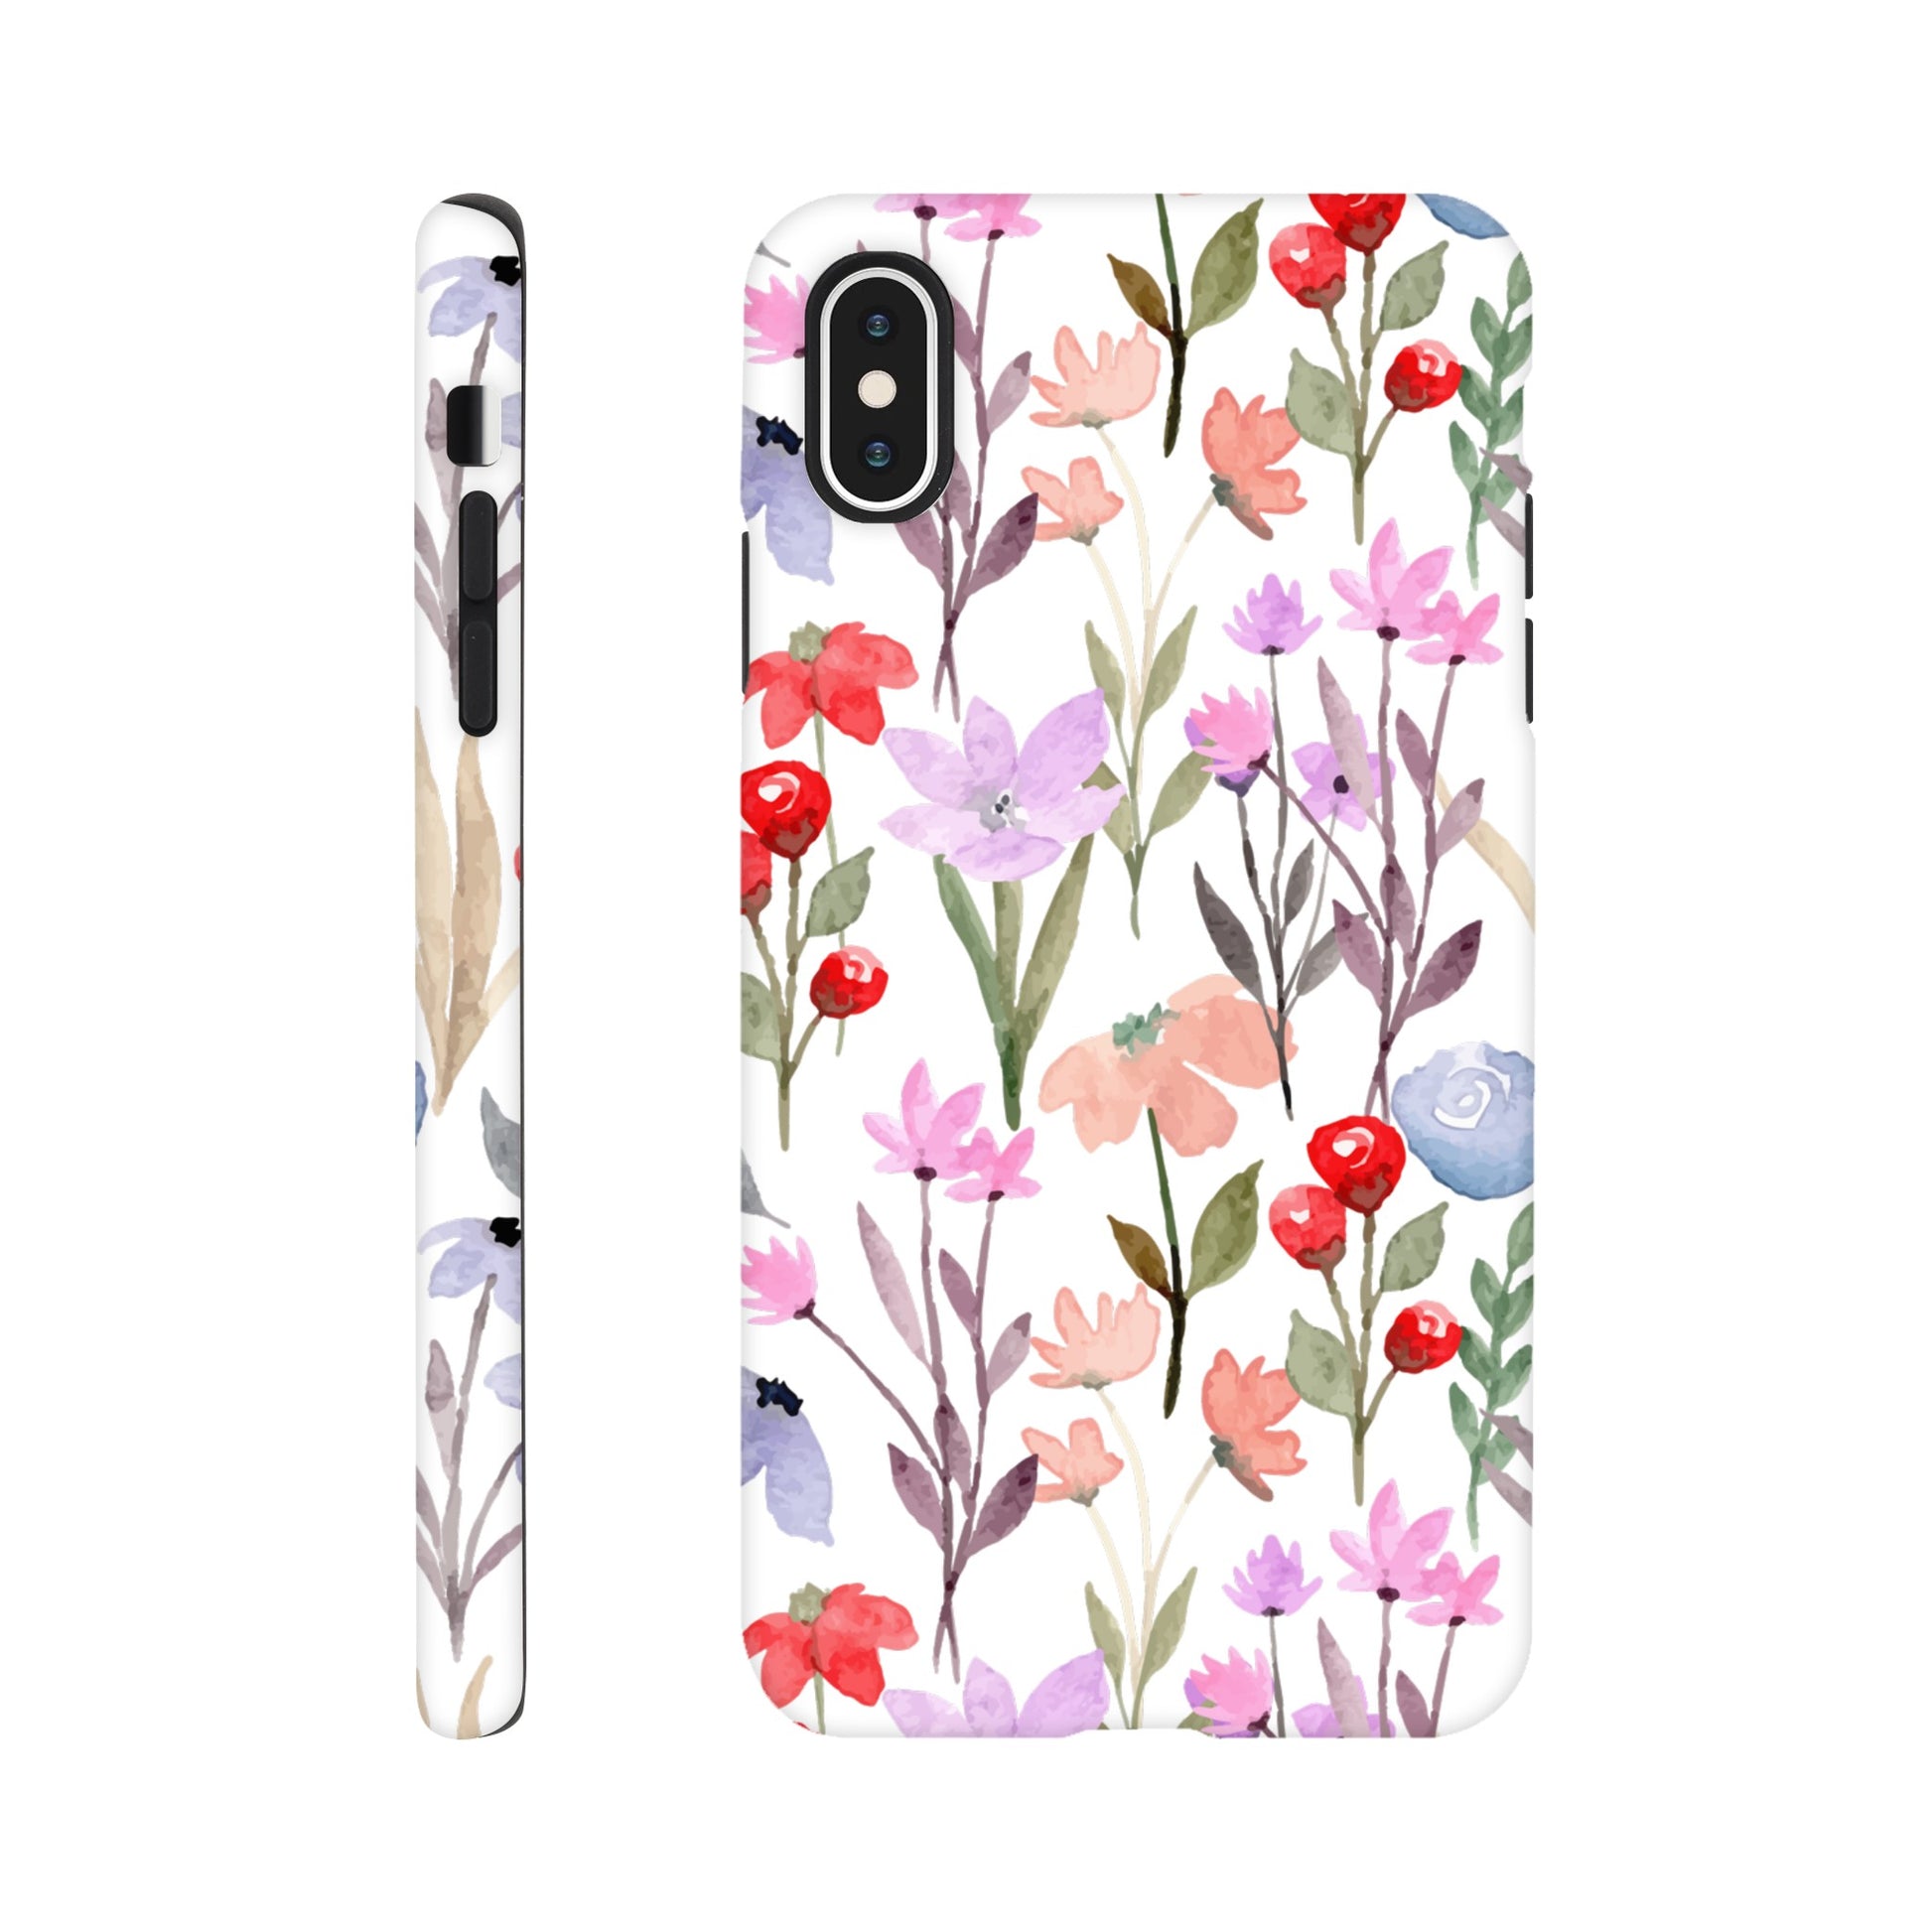 Watercolour Flowers - Phone Tough Case iPhone XS Max Phone Case Plants